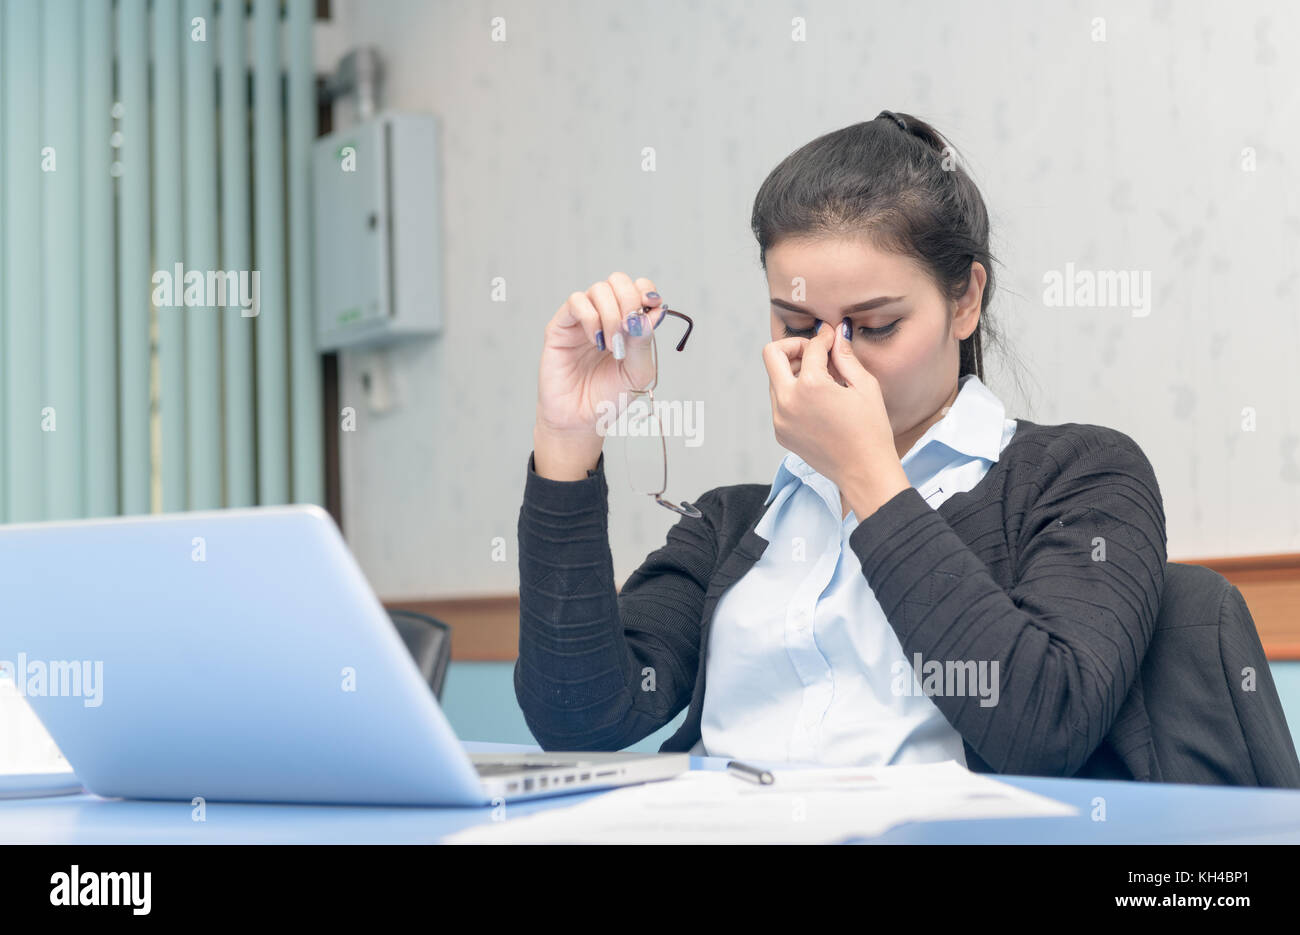 Asiatische Frau bekam Kopfschmerzen vom Arbeiten am Notebook den ganzen Tag lang, Computer Vision Syndrom Stockfoto